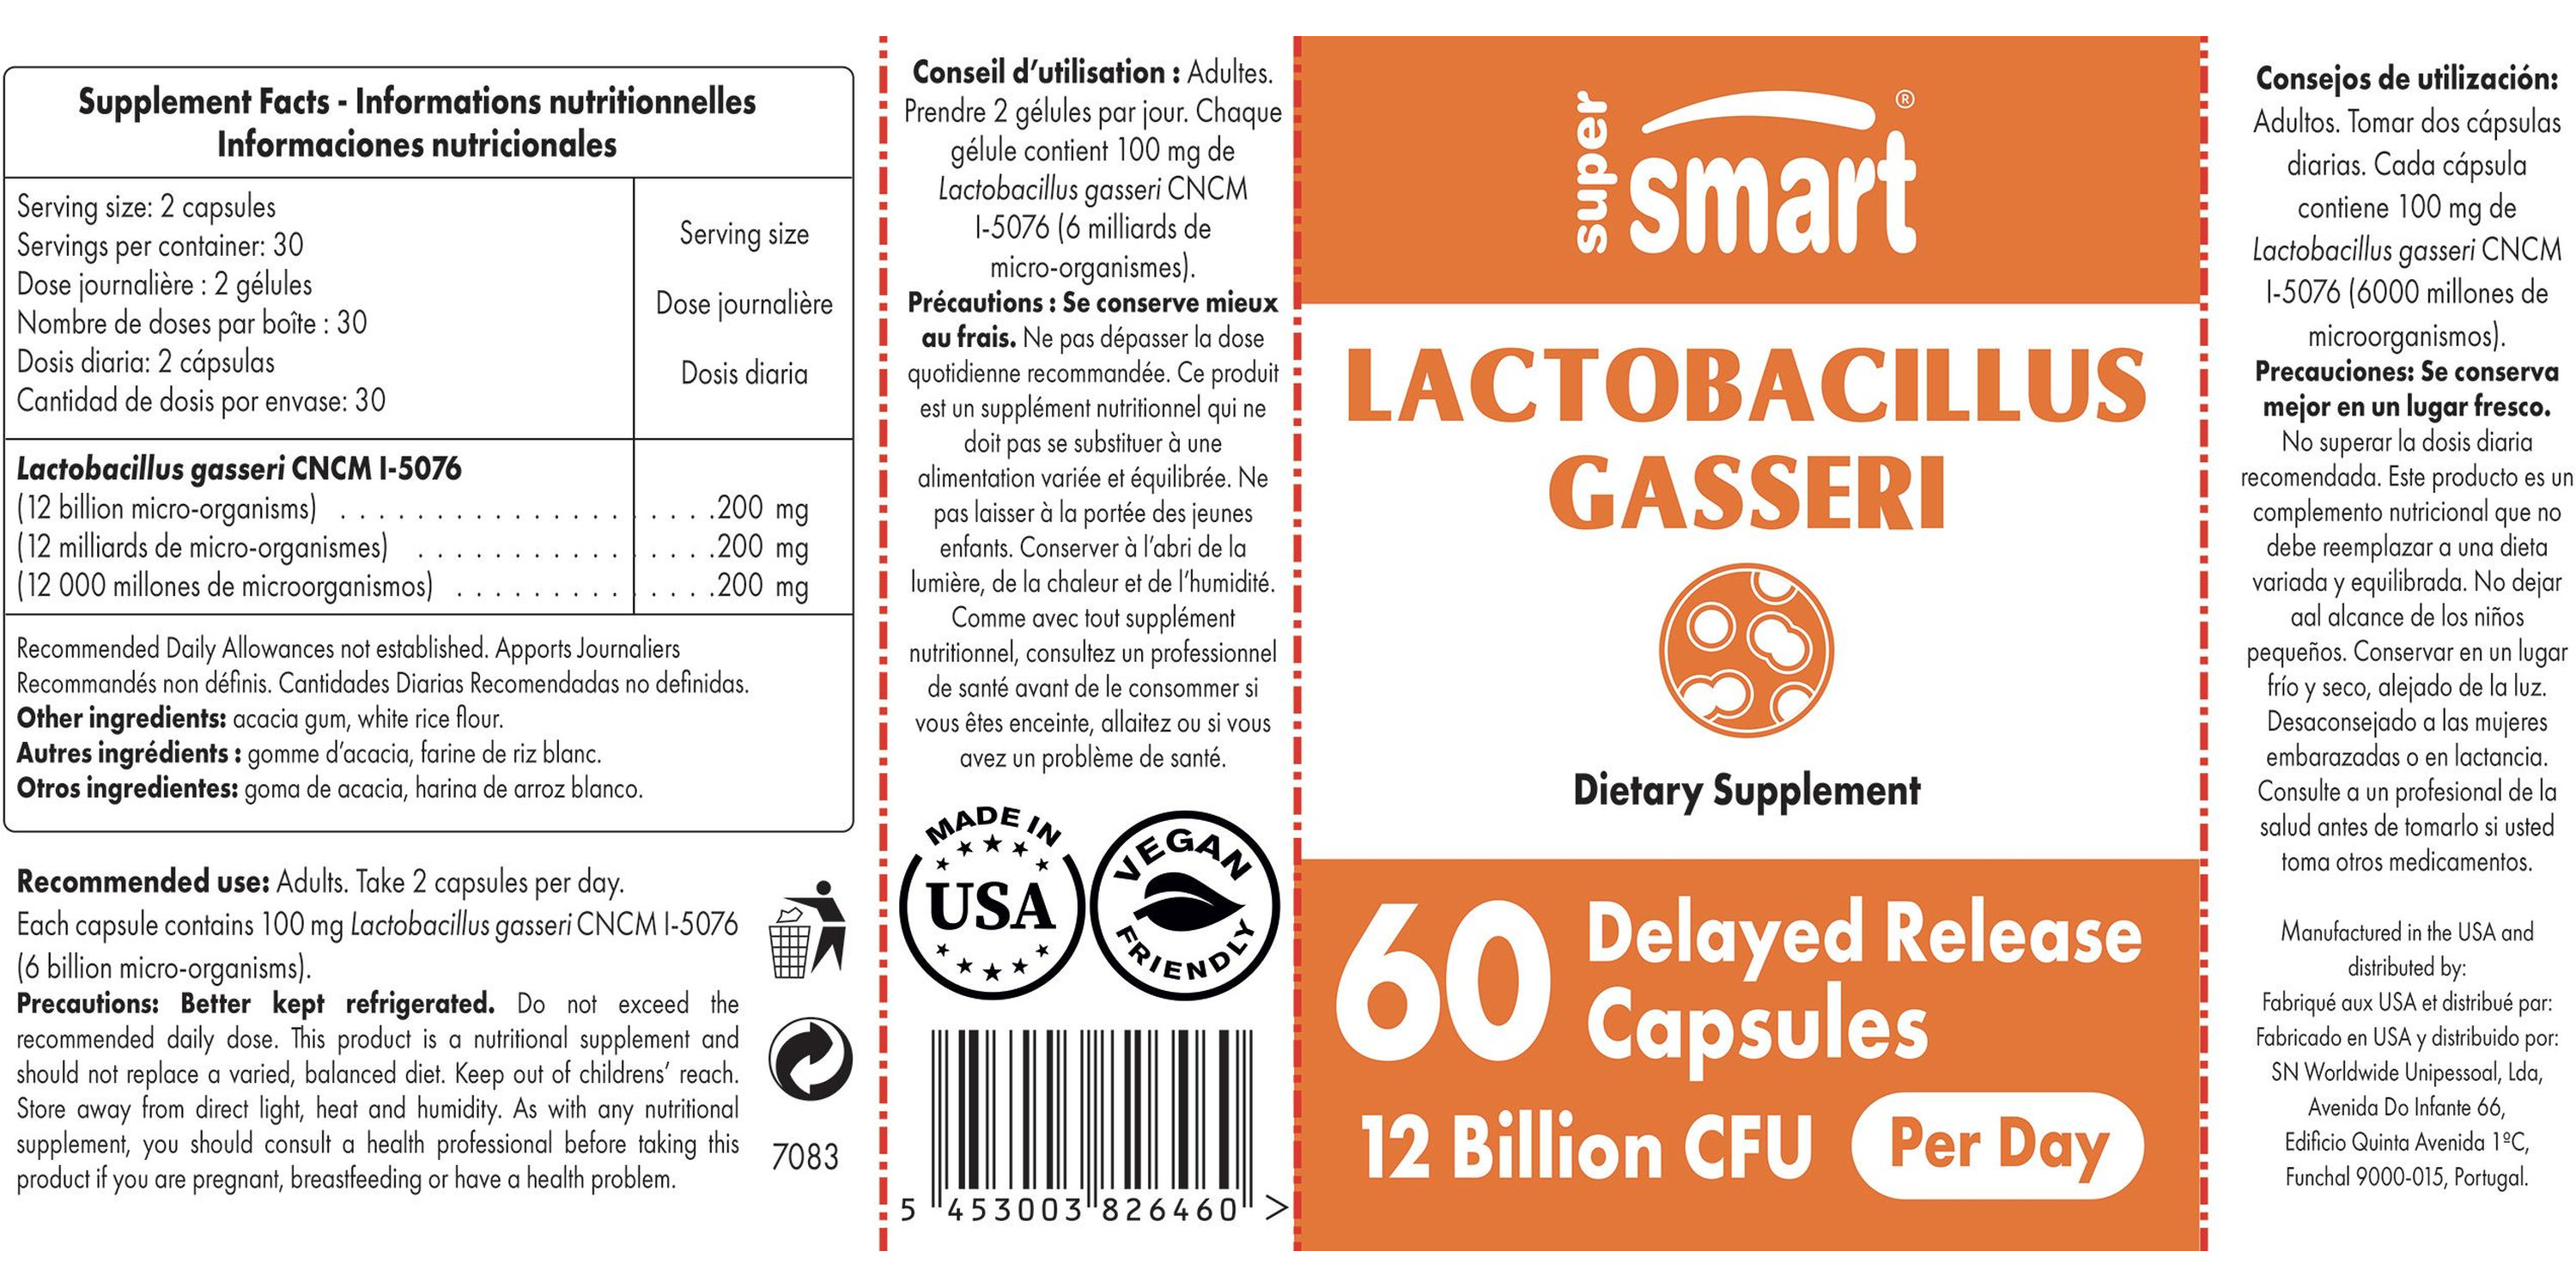 Lactobacillus Gasseri Supplement